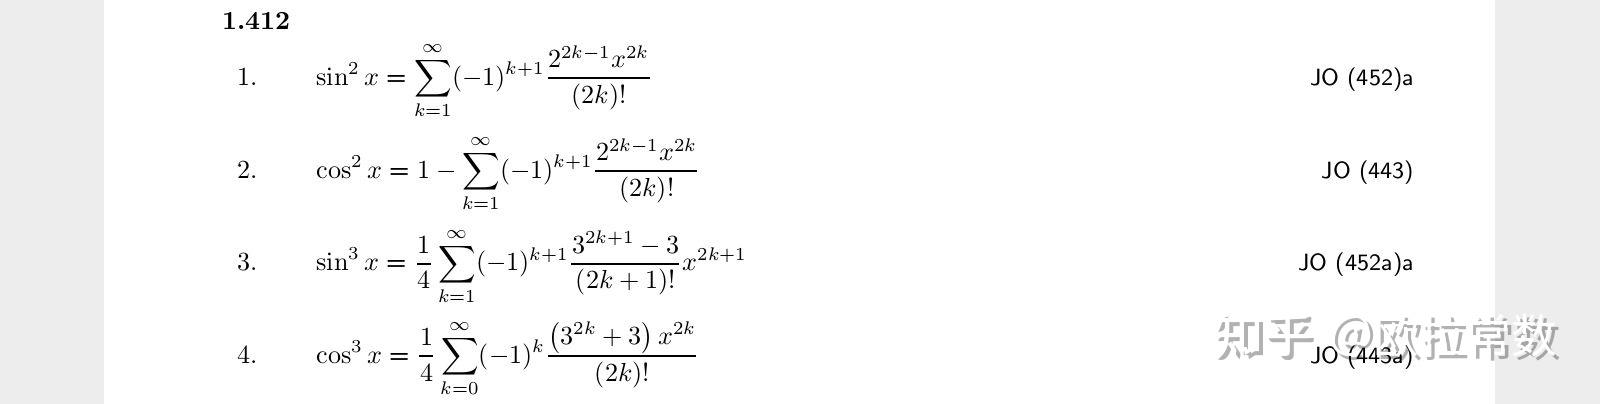 sinx与cosx平方立方后的泰勒级数展开式